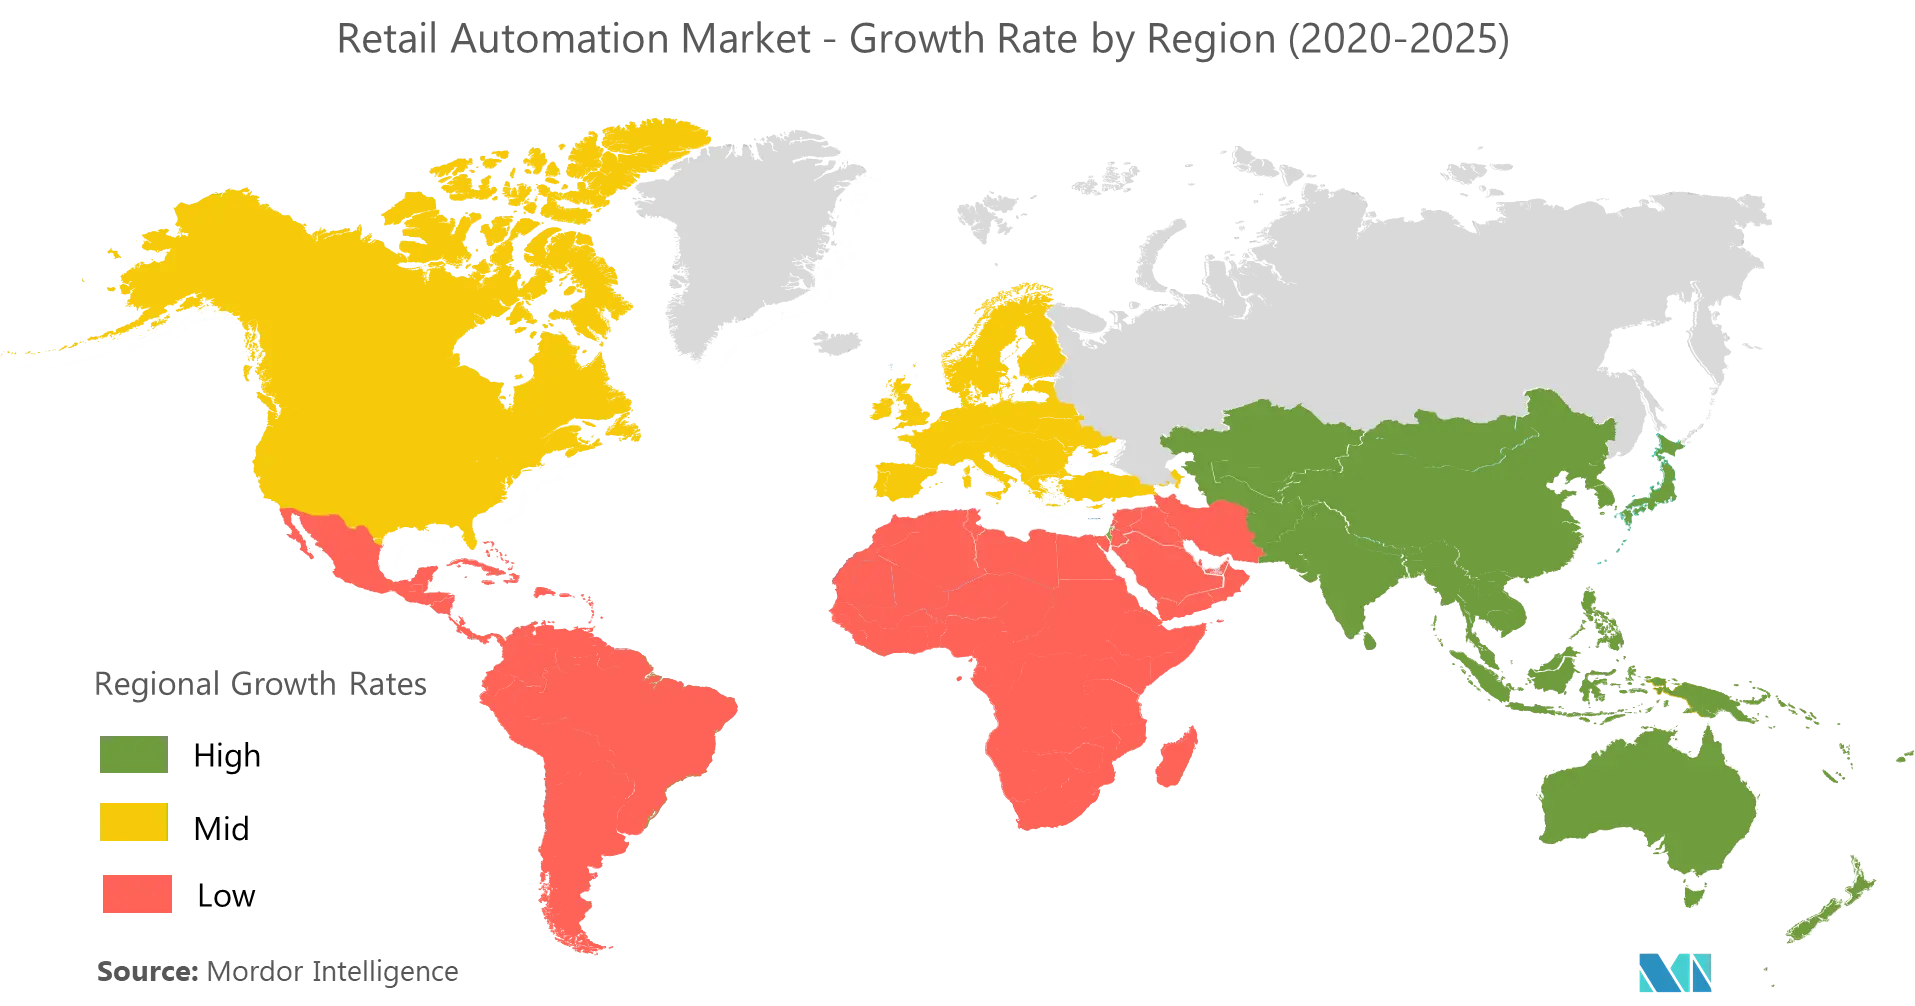 Рынок автоматизации розничной торговли - темпы роста по регионам (2020 - 2025 гг.)